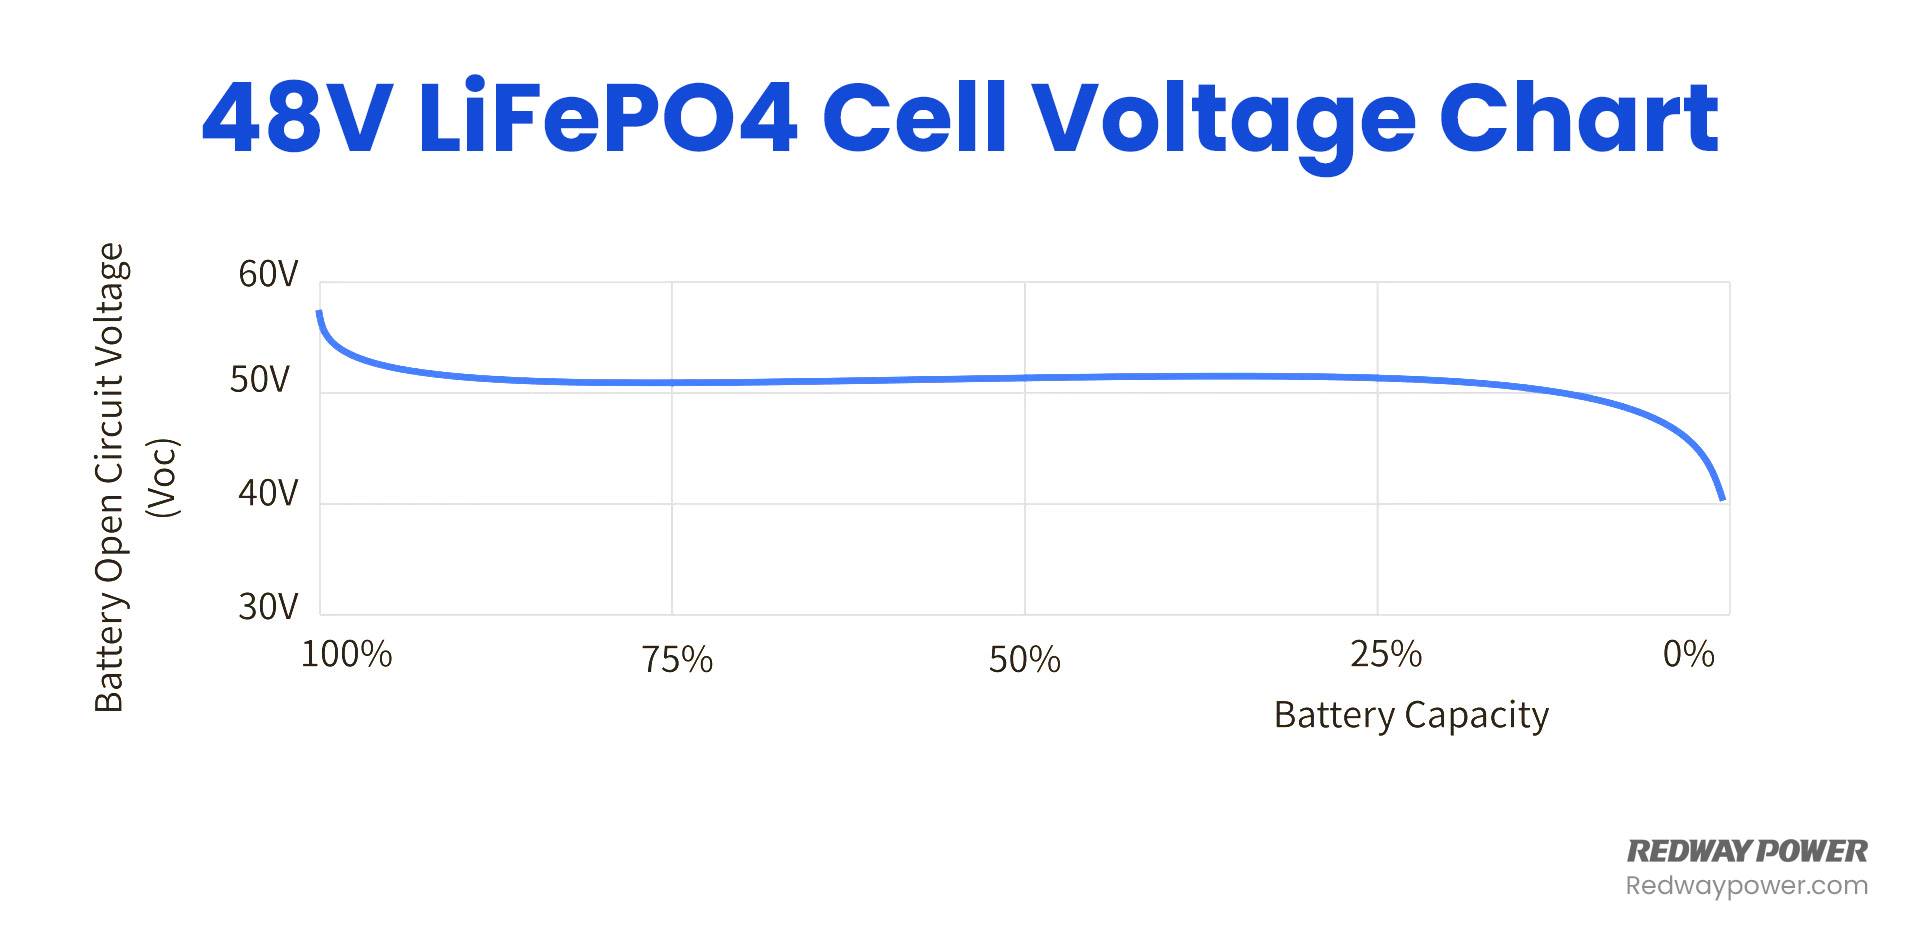 LiFePO4 Voltage Chart (3.2V, 12V, 24V 48V) Comparison, 48V LiFePO4 Cell Voltage Chart